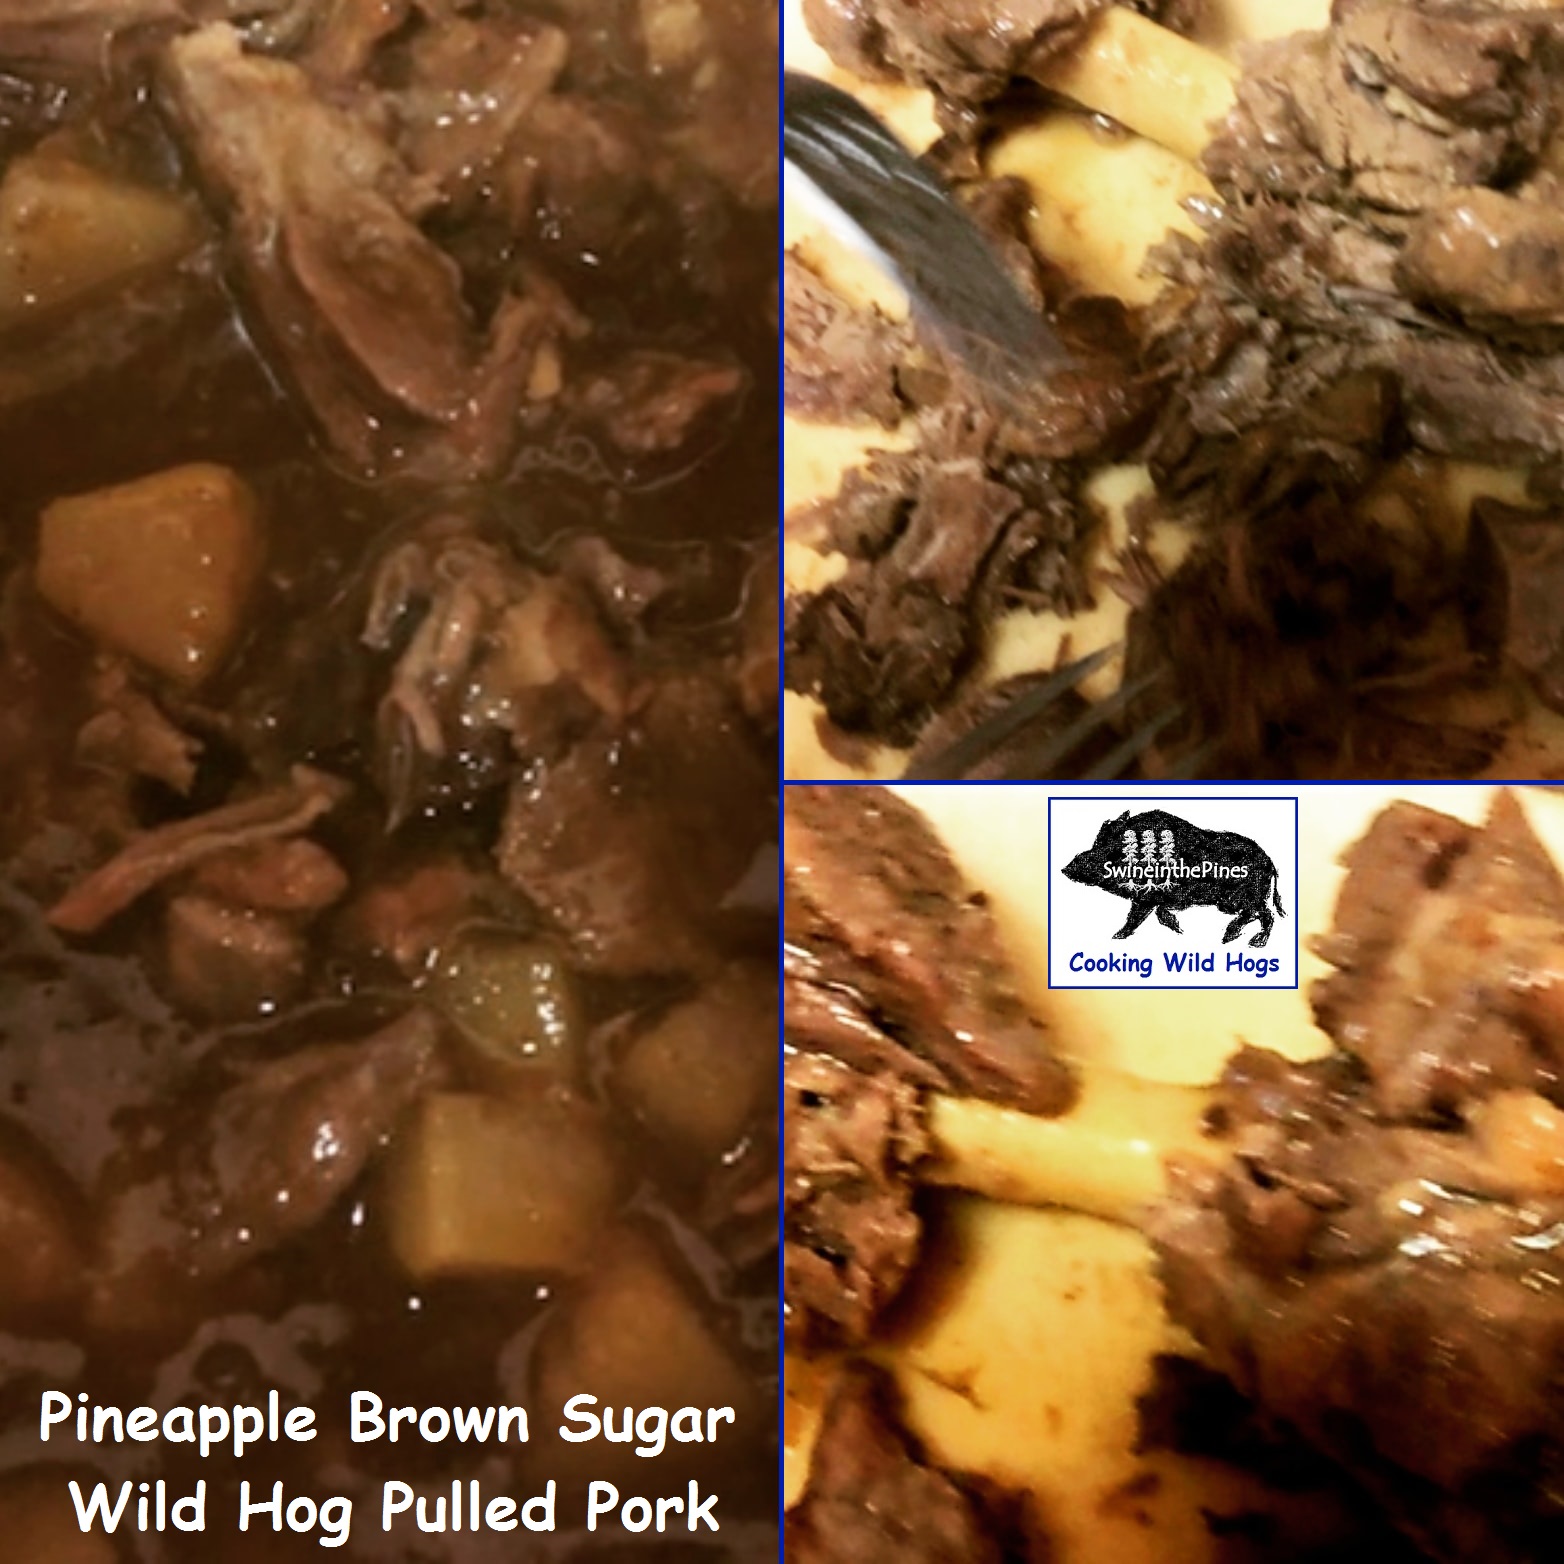 Pineapple Brown Sugar Wild Hog Pulled Pork!